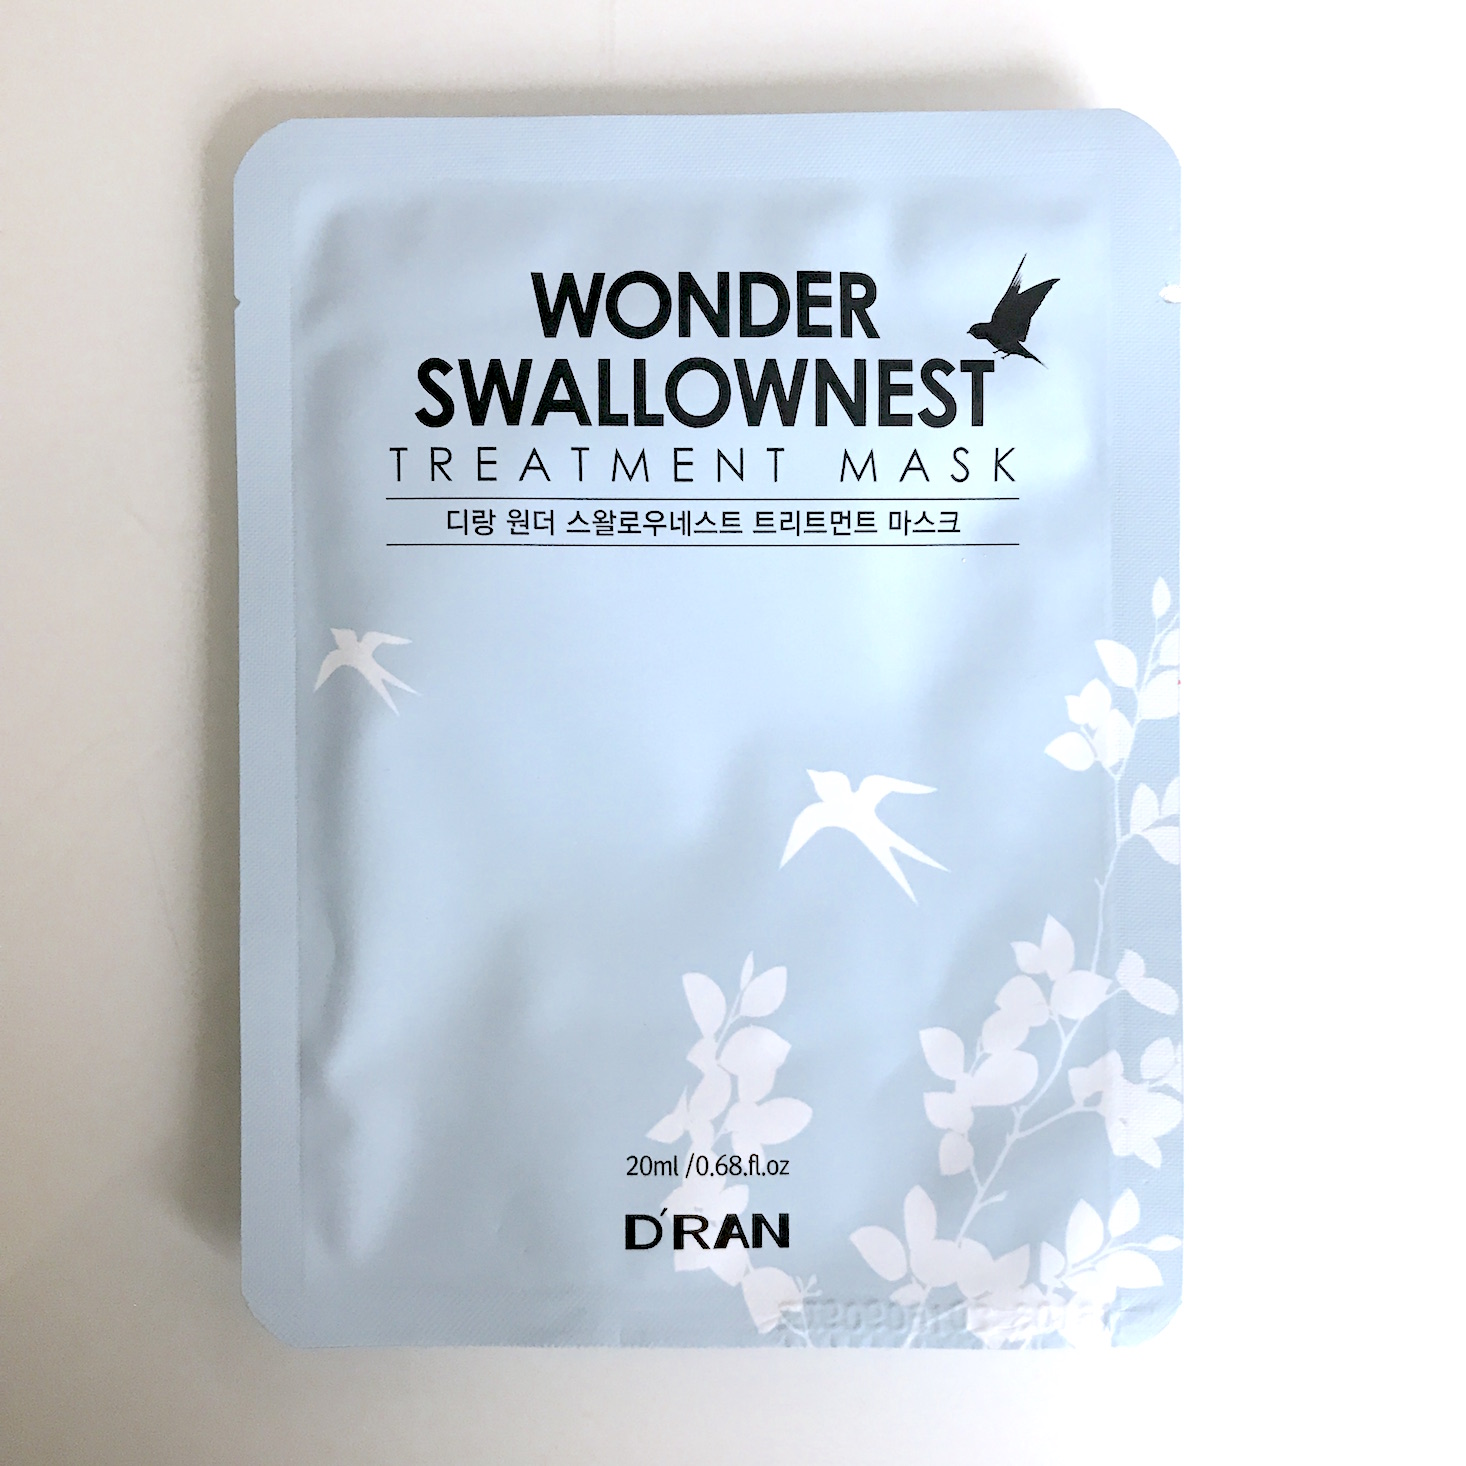 Mishimask December 2017 - wonder swallownest mask